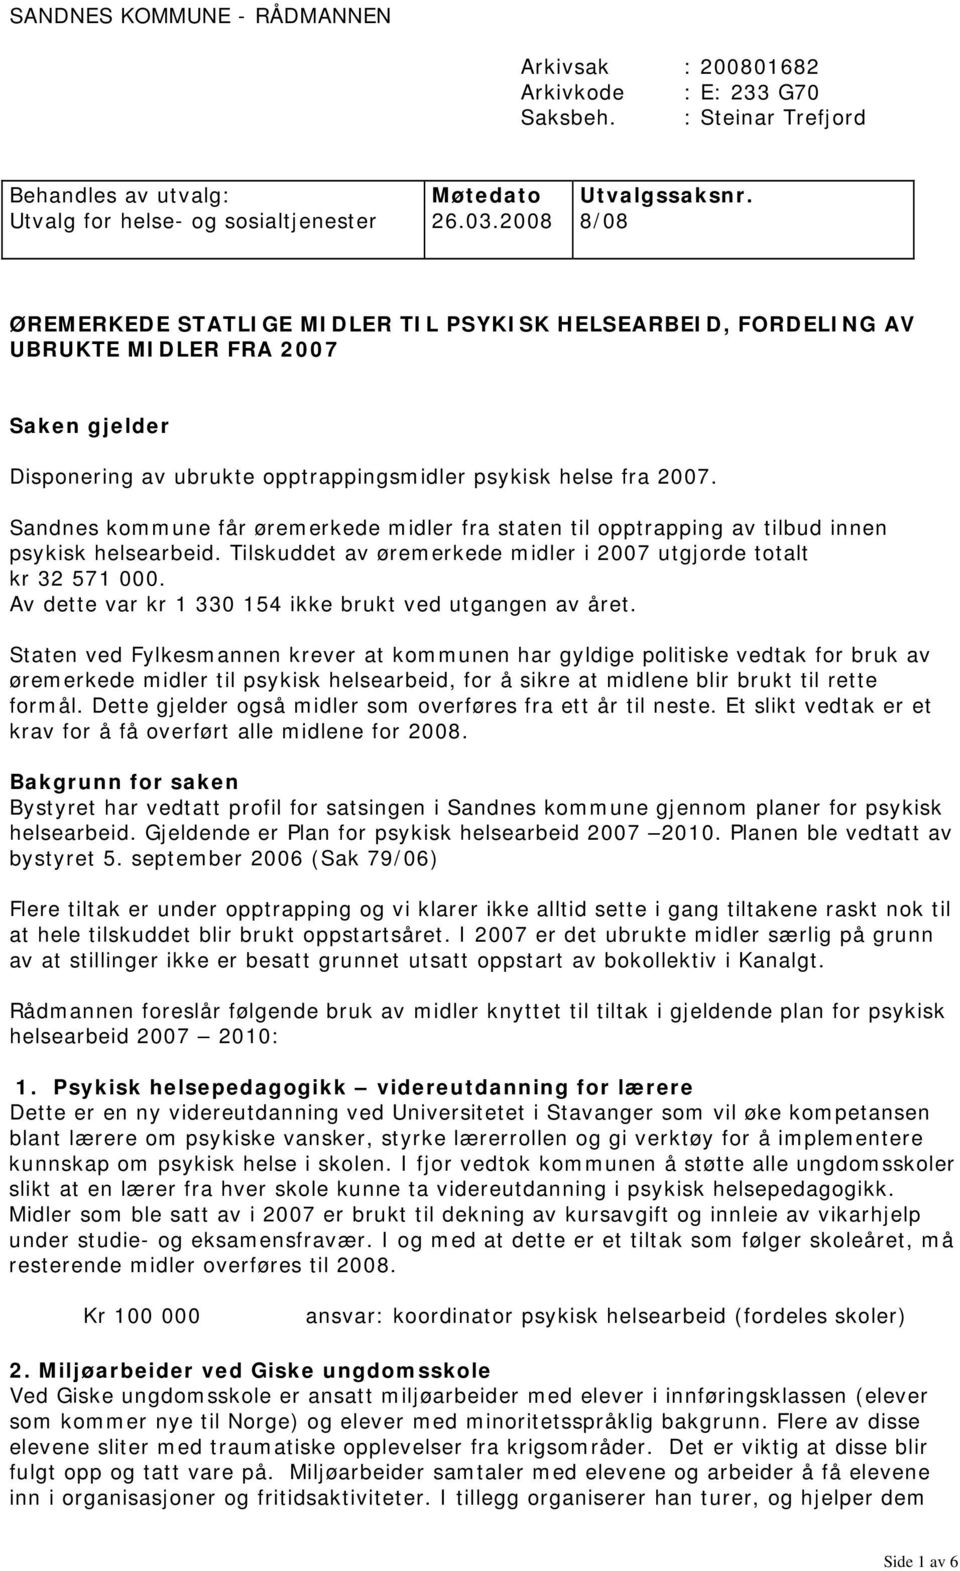 Sandnes kommune får øremerkede midler fra staten til opptrapping av tilbud innen psykisk helsearbeid. Tilskuddet av øremerkede midler i 2007 utgjorde totalt kr 32 571 000.